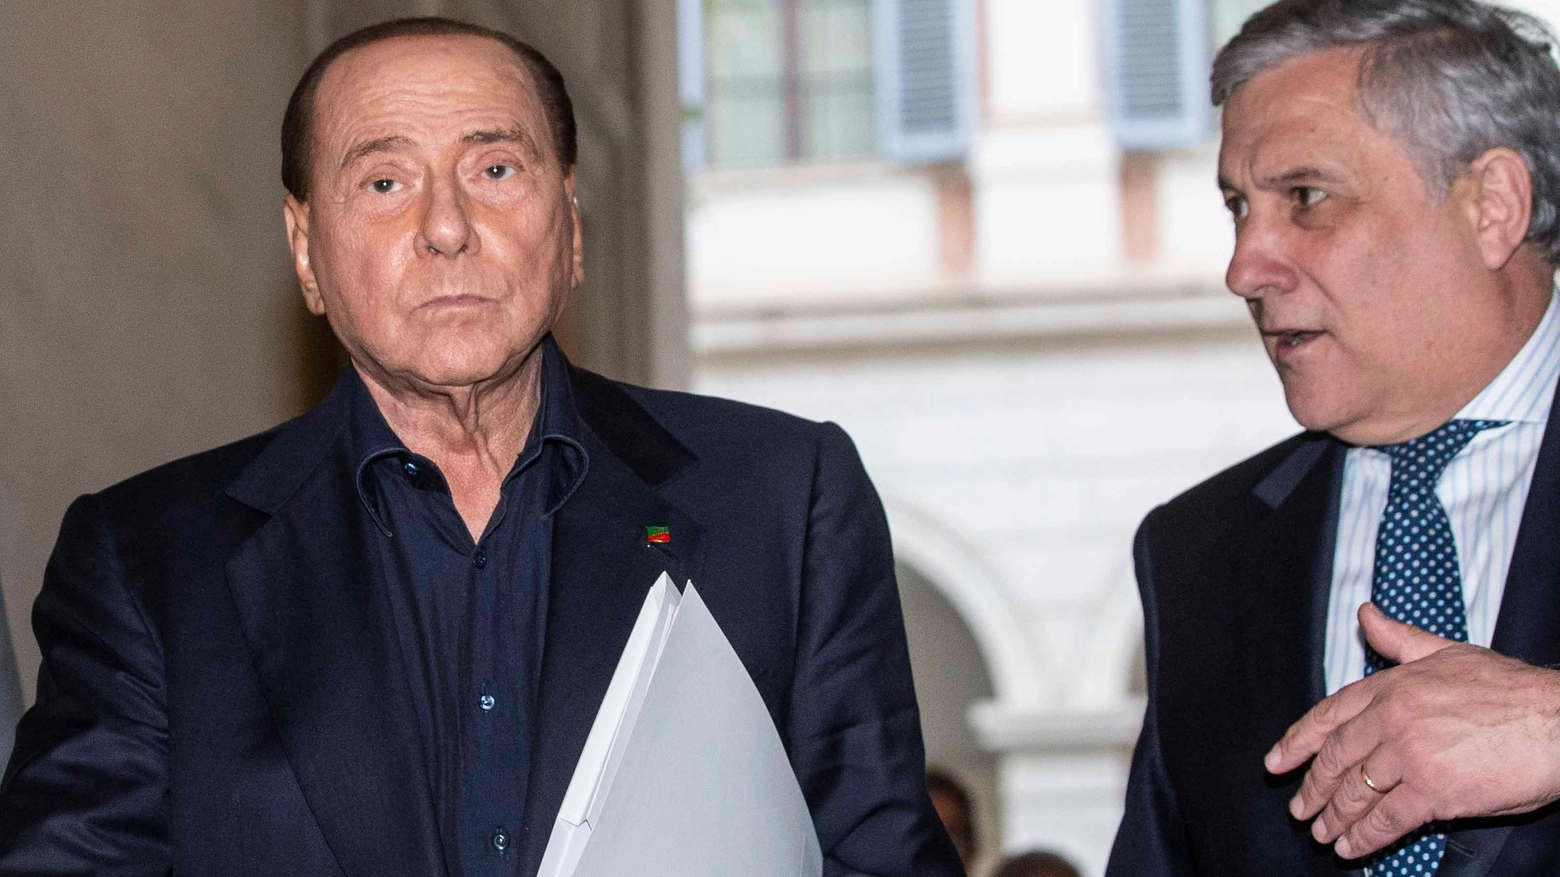 L’appello del leader di Forza Italia a sostegno di Salati: "Spero che anche qui arrivi la svolta"